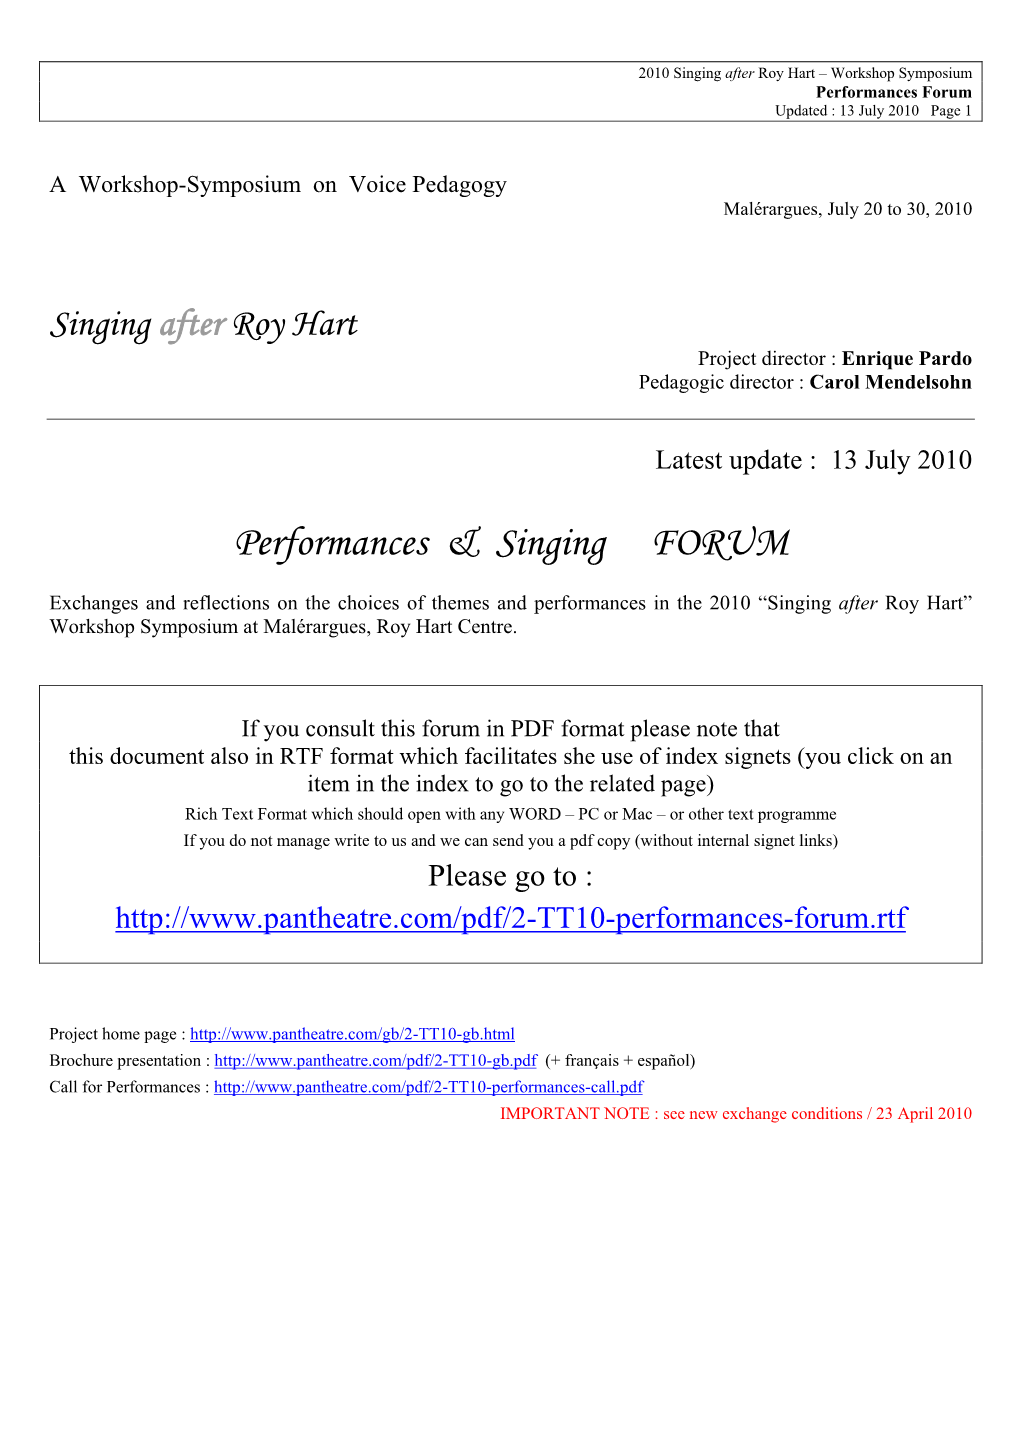 Performances & Singing FORUM